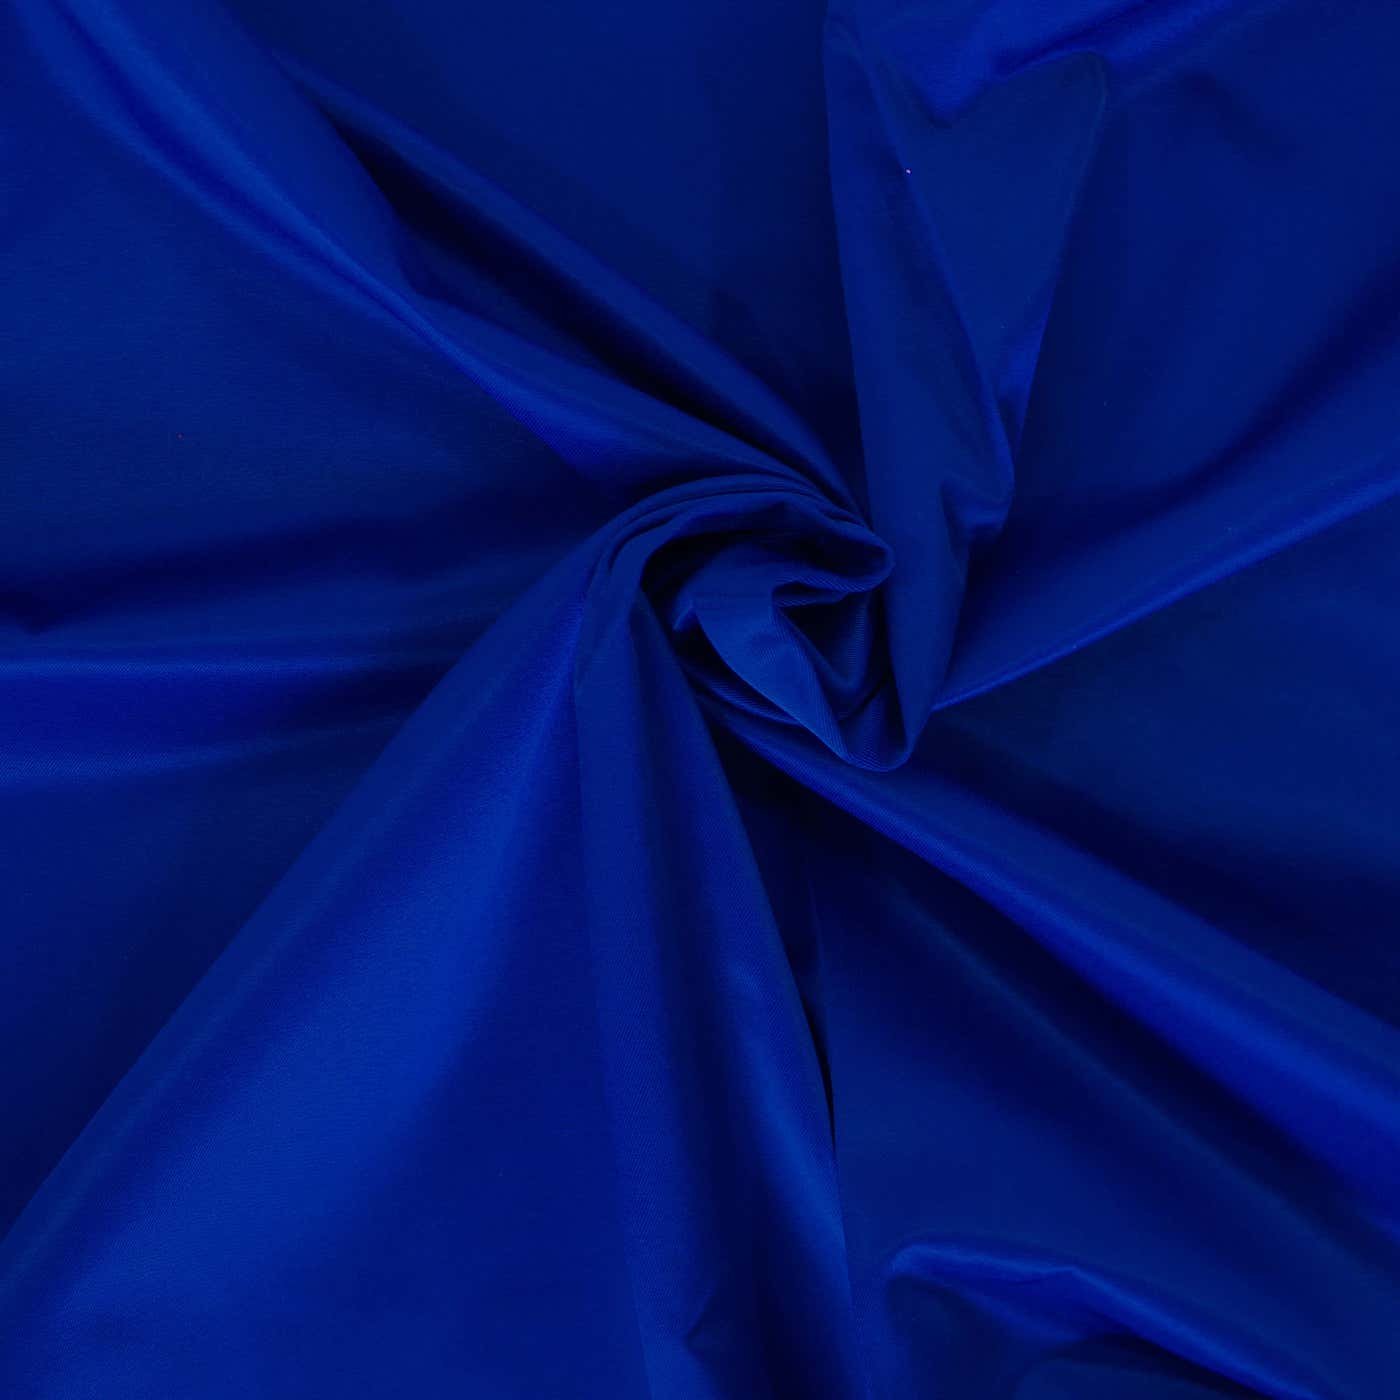 Ren og skær trug generelt Bævernylon blå | vælg mellem 16 forskellige farver